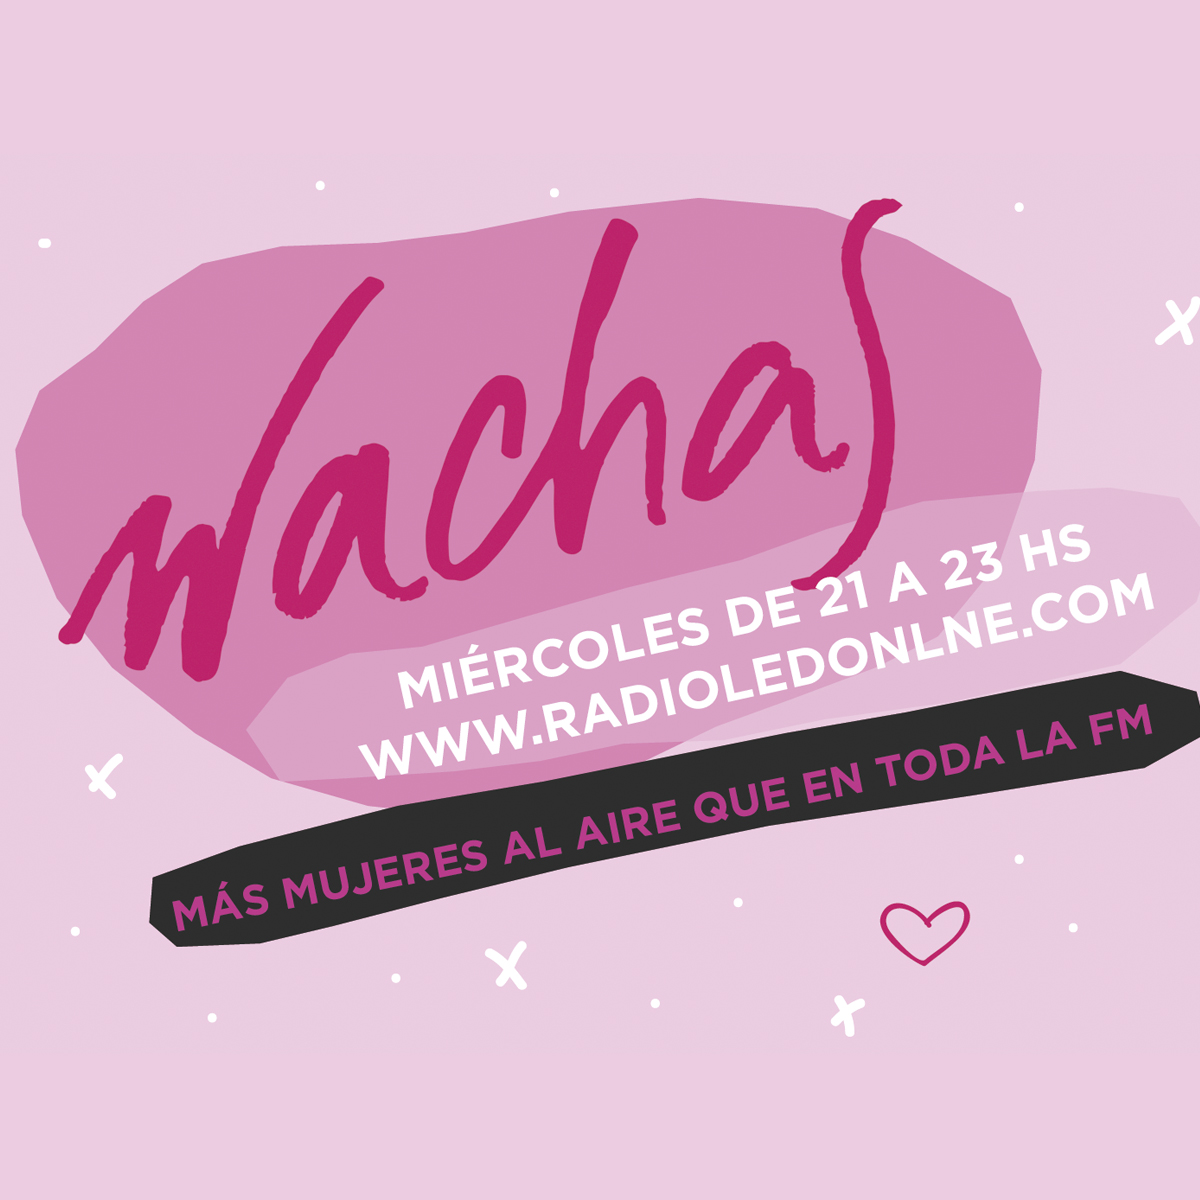 #Podcast Wachas 19.07: Paula B. Giménez‏ @YoFermina + @_alexismoyano + #DiaDelAmigo + #Okja